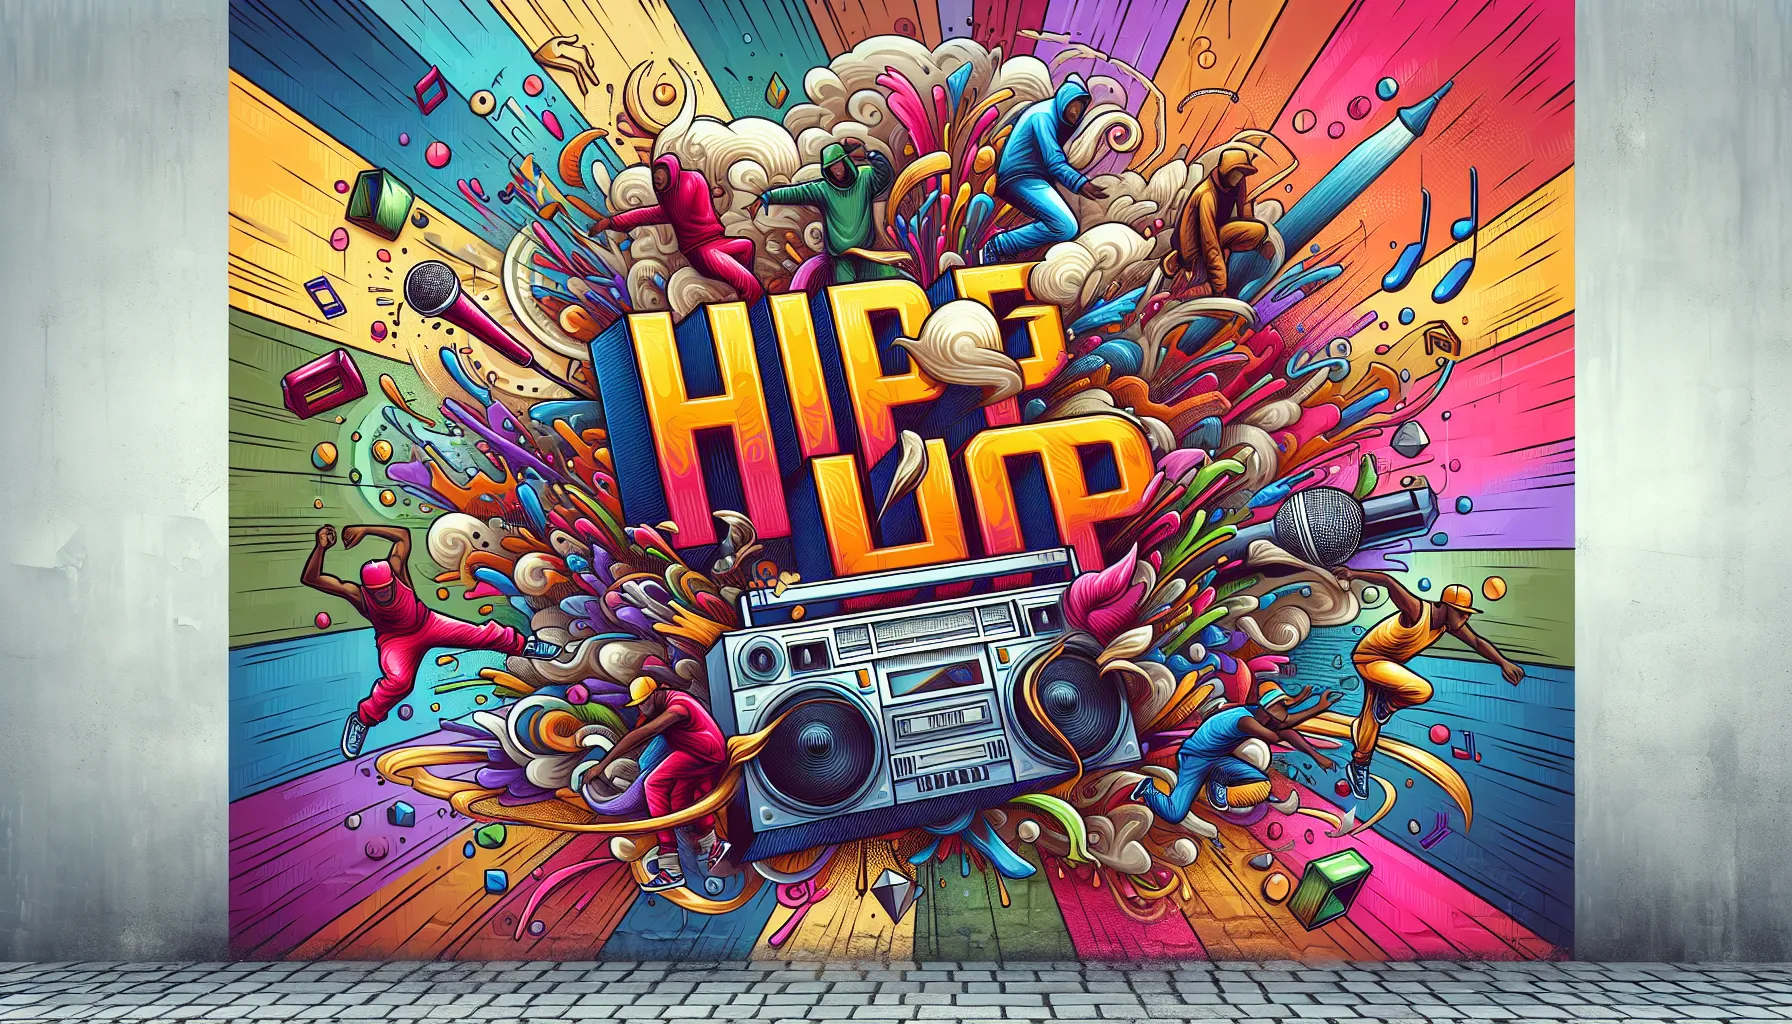 O Hip Hop, uma forma de expressão artística que inclui música, dança, grafite e moda, tem suas raízes na cultura afro-americana e latino-americana. Surgiu em meados da década de 1970 no Bronx, bairro de Nova York, como uma resposta à realidade social e econômica da época.

O Hip Hop nasceu em meio à pobreza, desemprego e violência que afetav